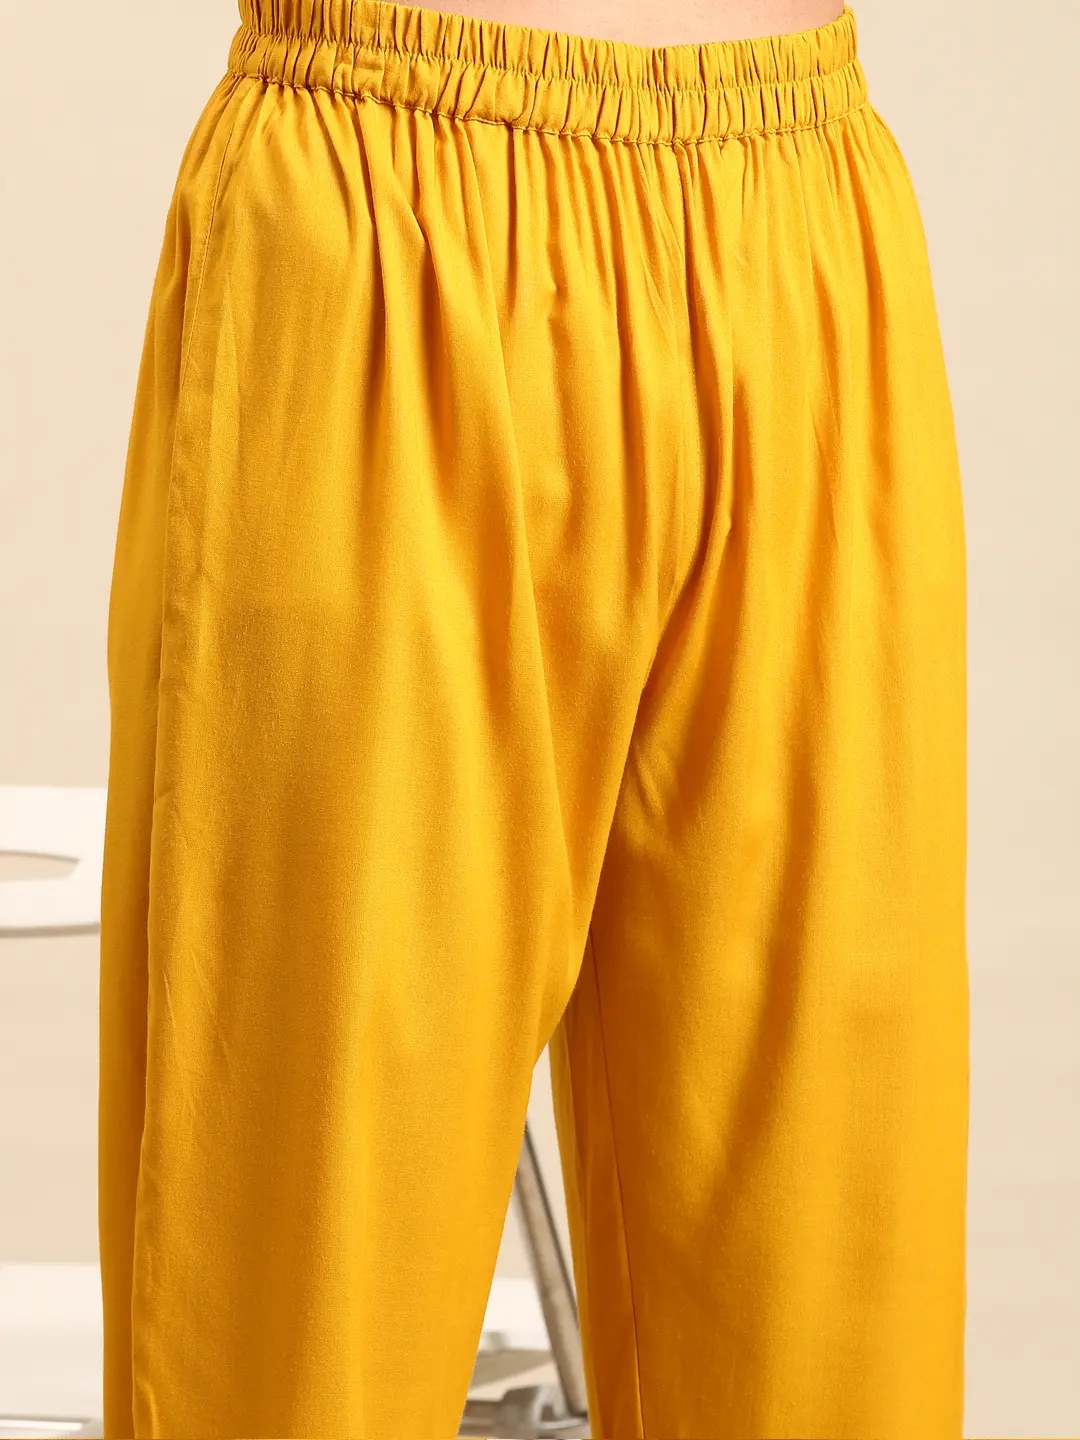 SHOWOFF Women's Mandarin Collar Yellow Anarkali Kurta Sets